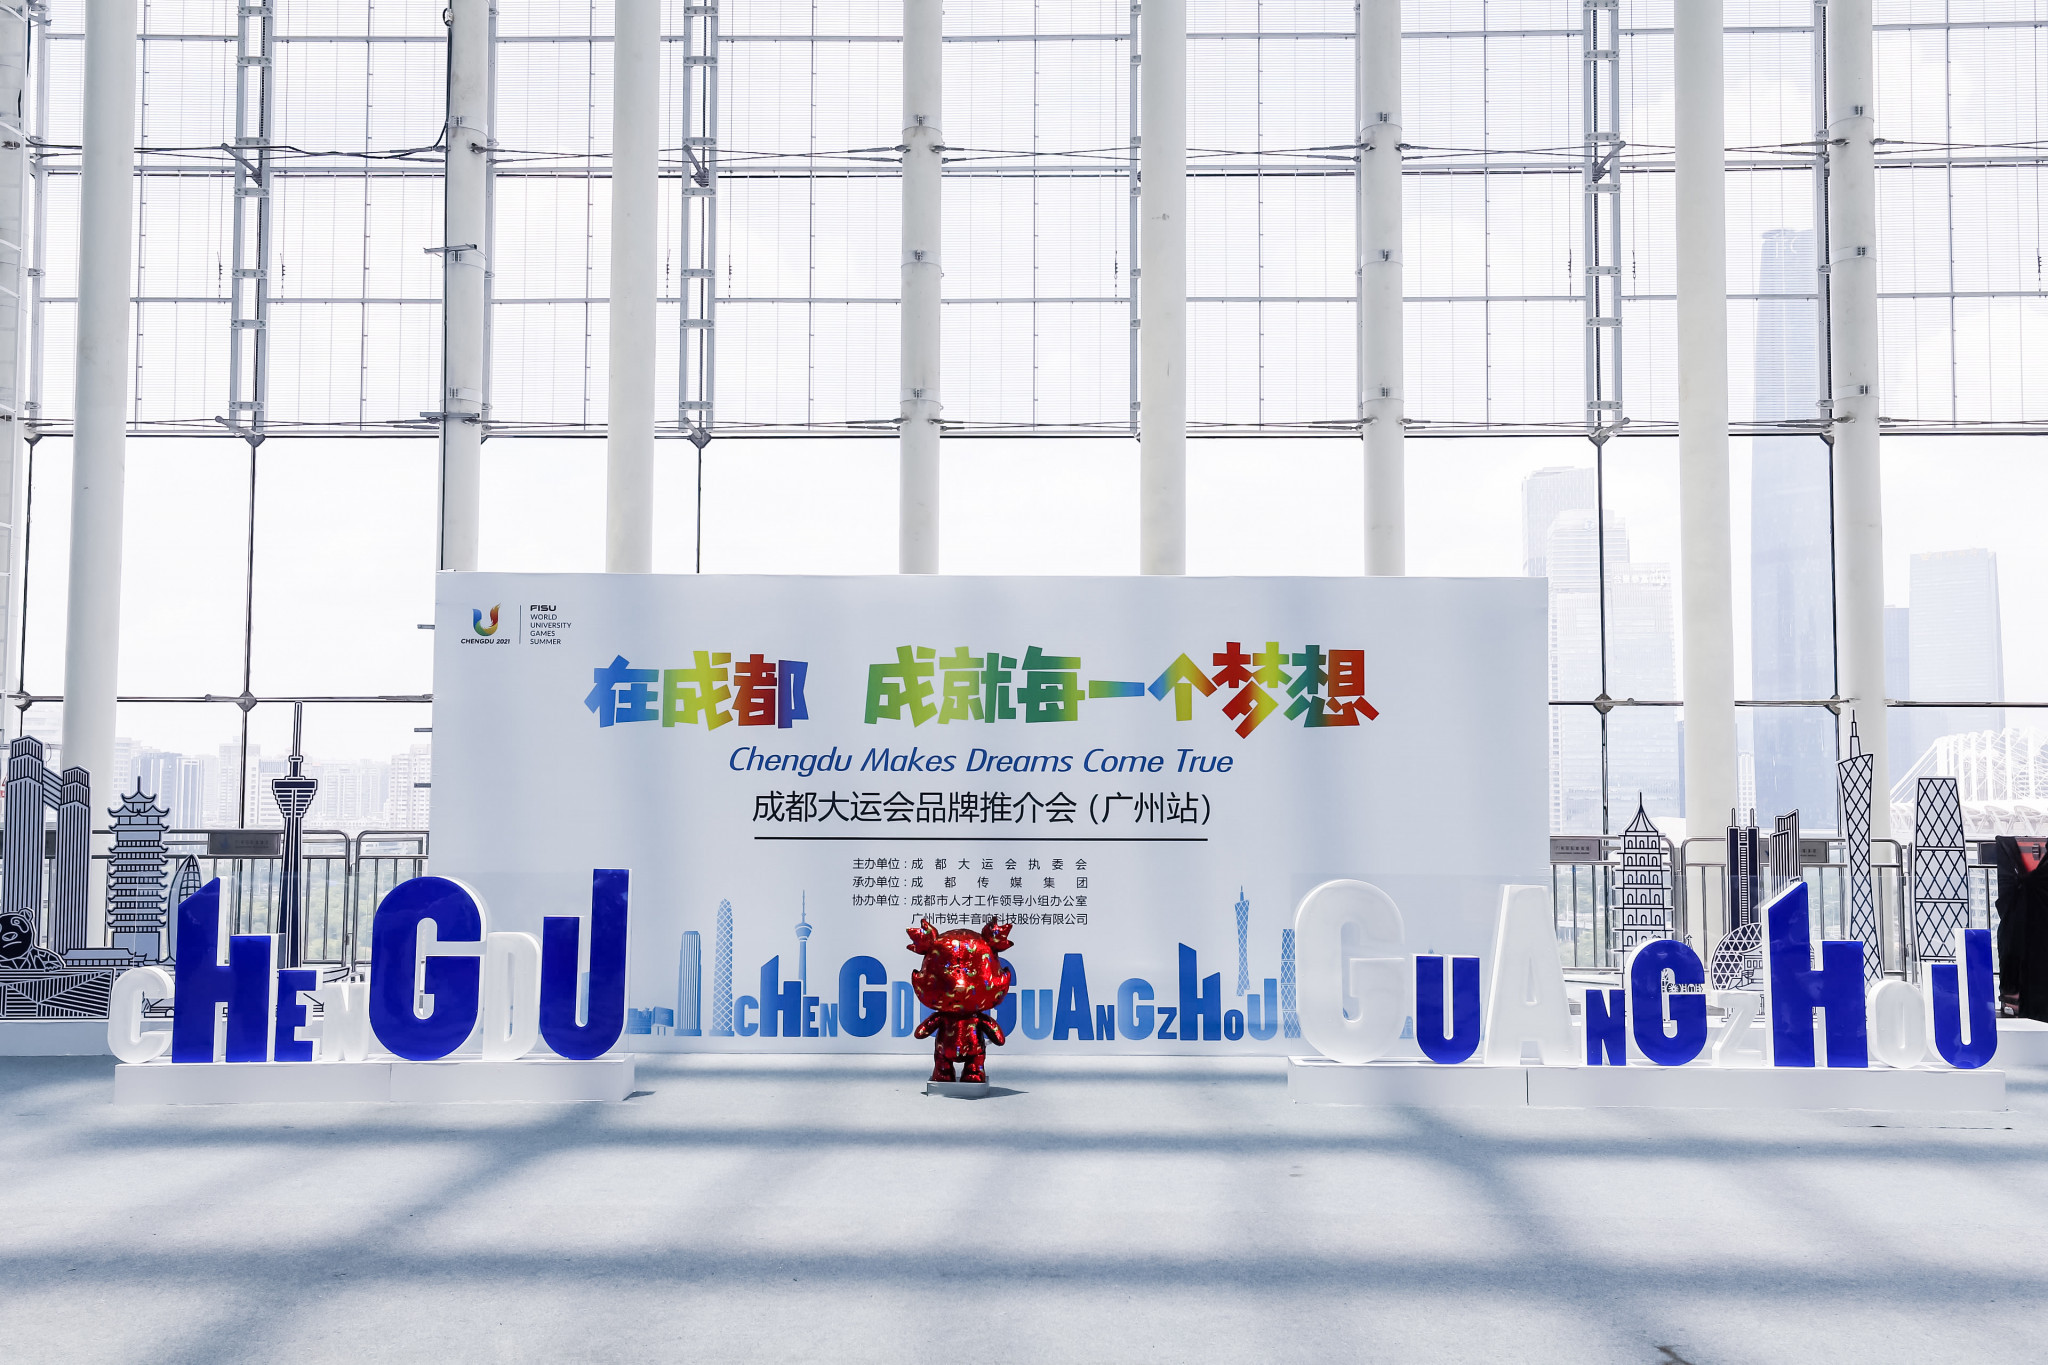 Chengdu 2021 announces new partnerships in Guangzhou